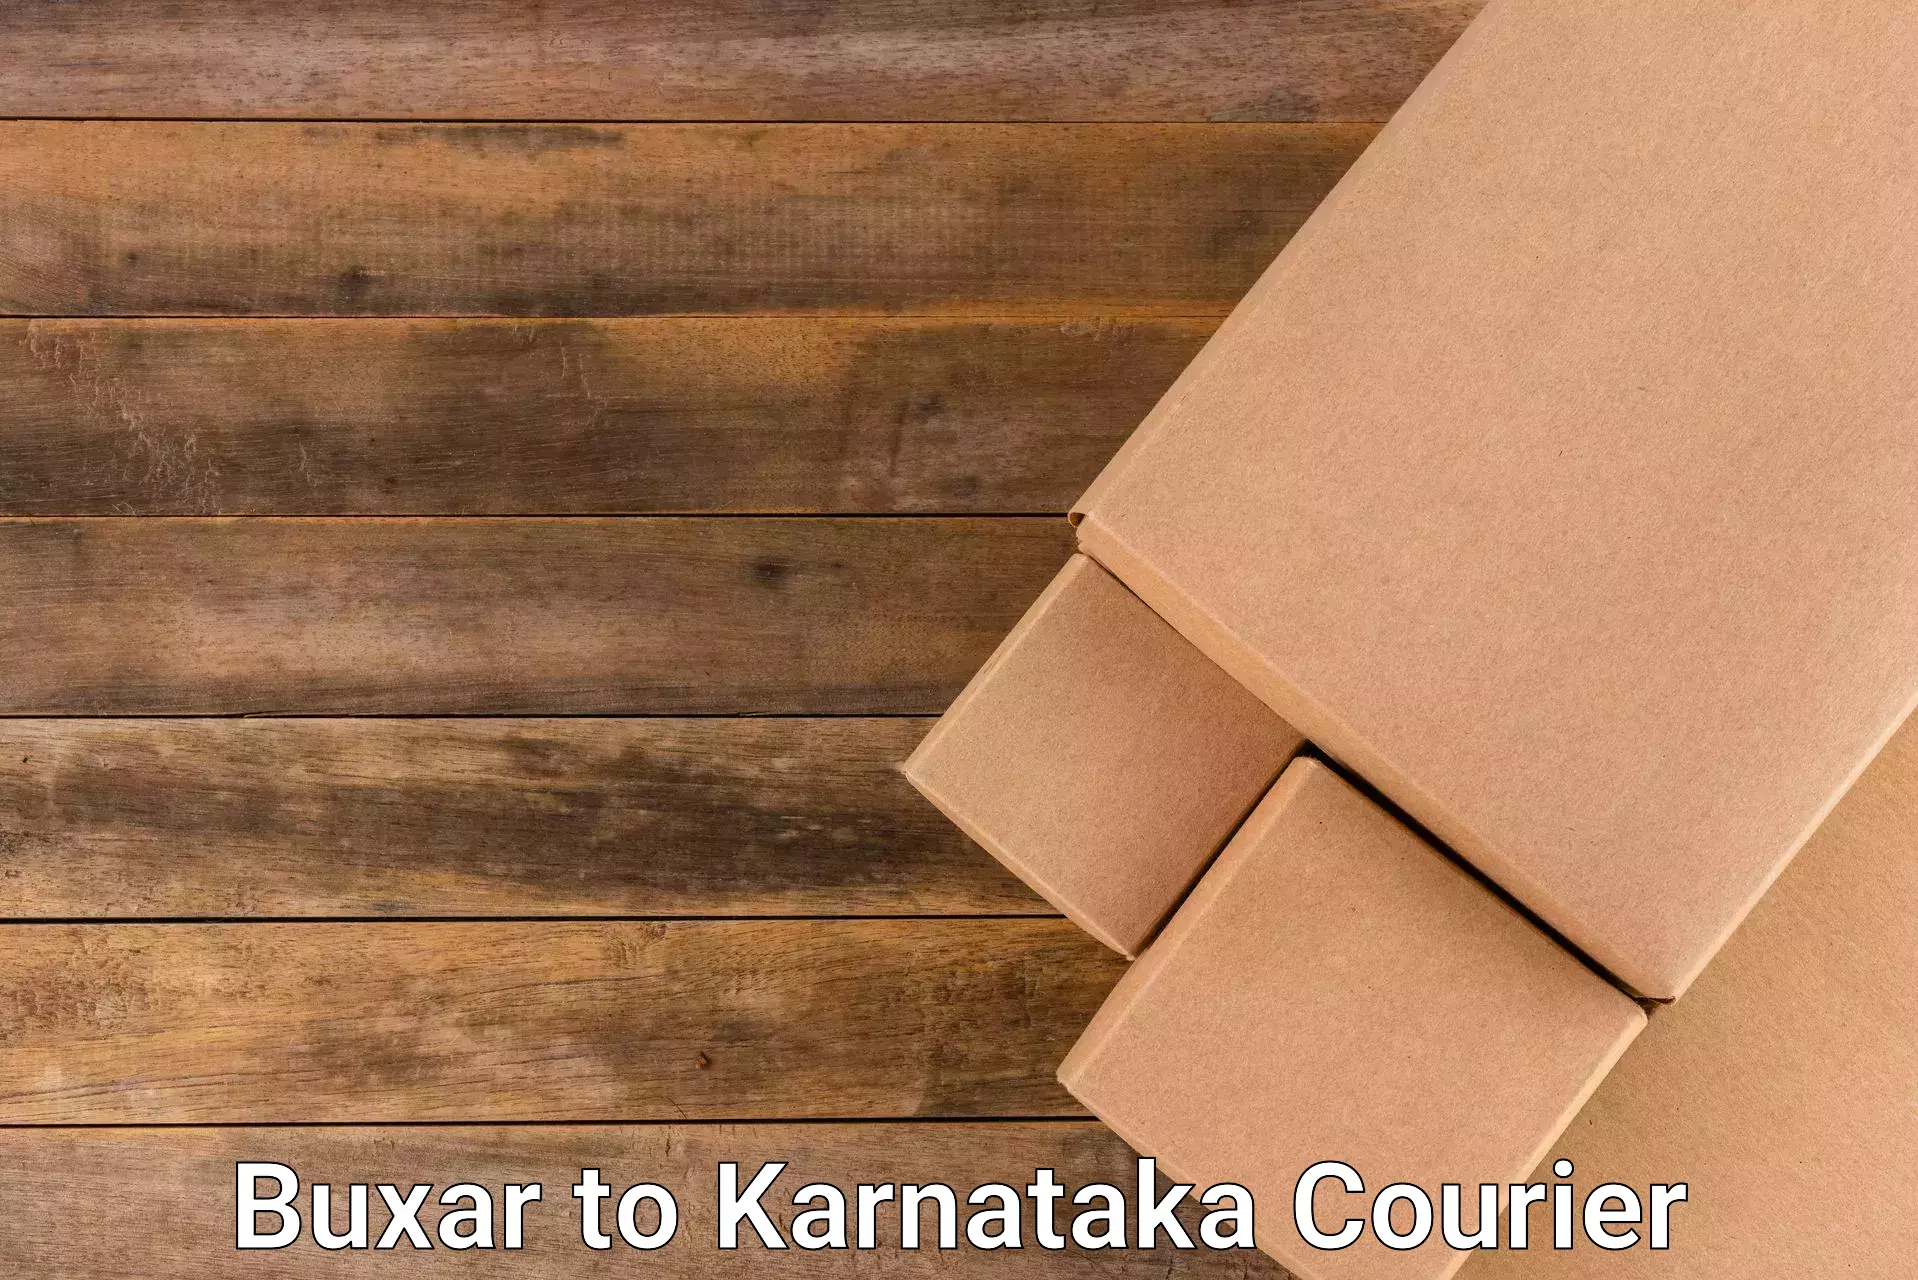 Express delivery network Buxar to Kanjarakatte